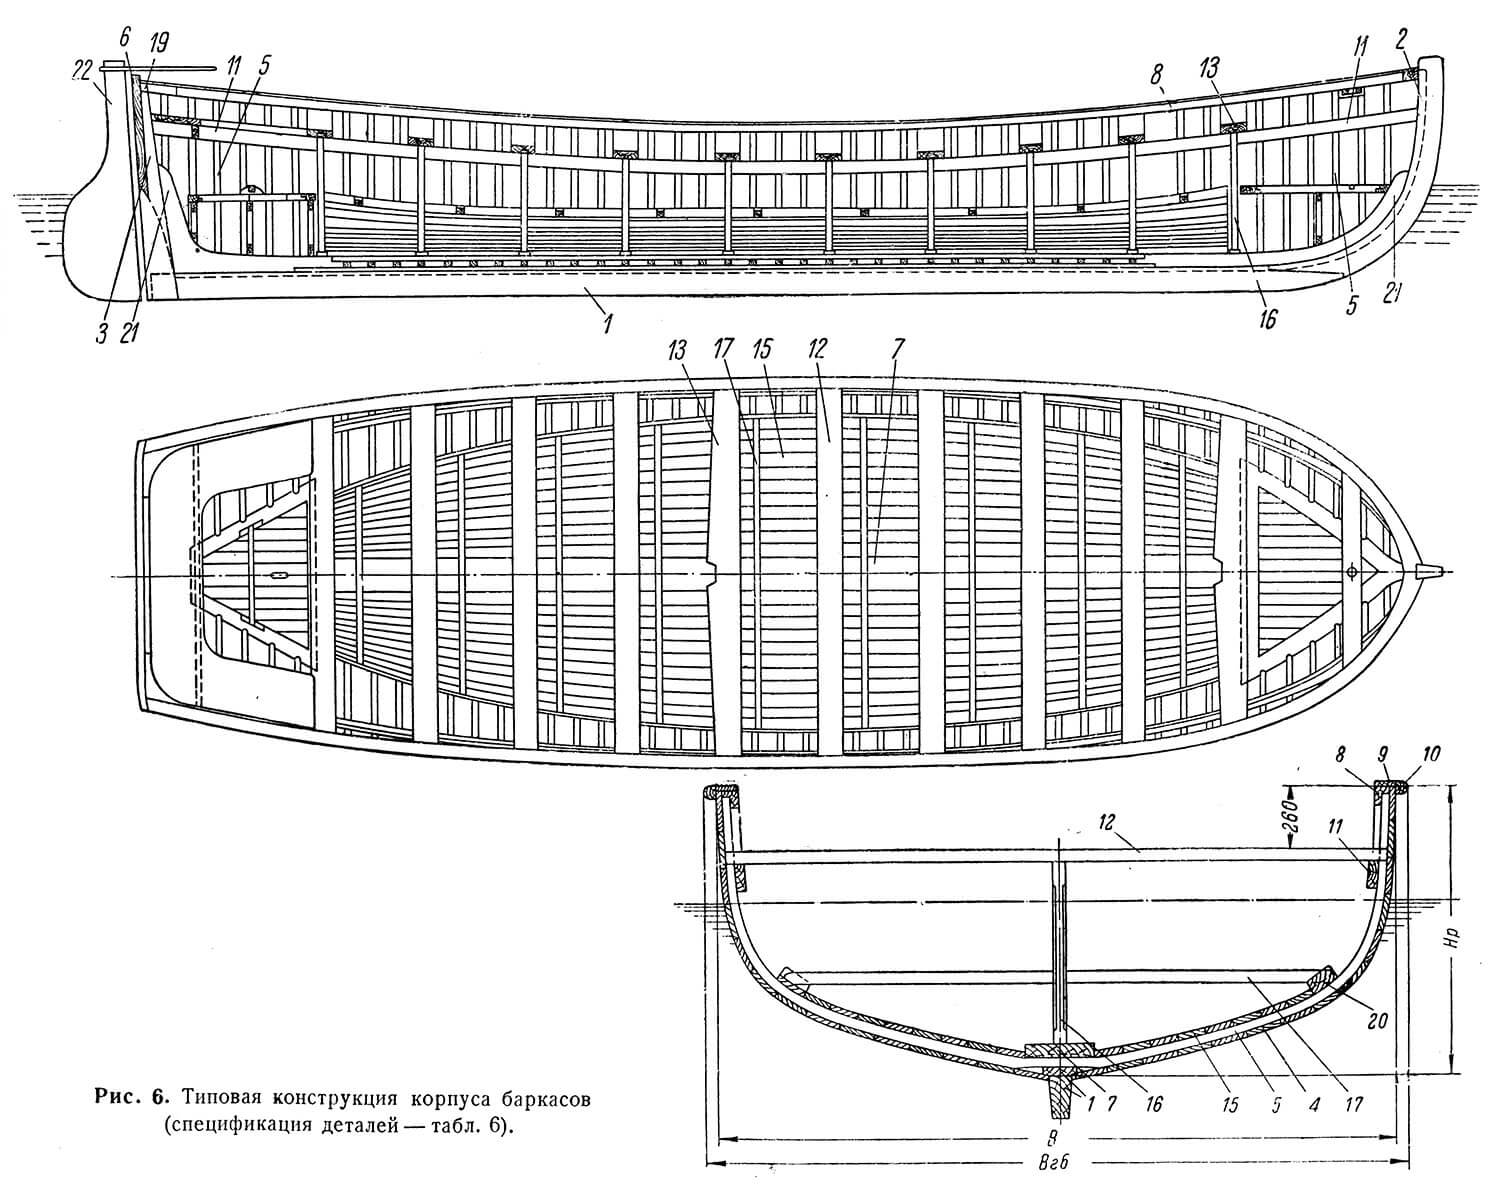 Типовая конструкция корпуса баркасов